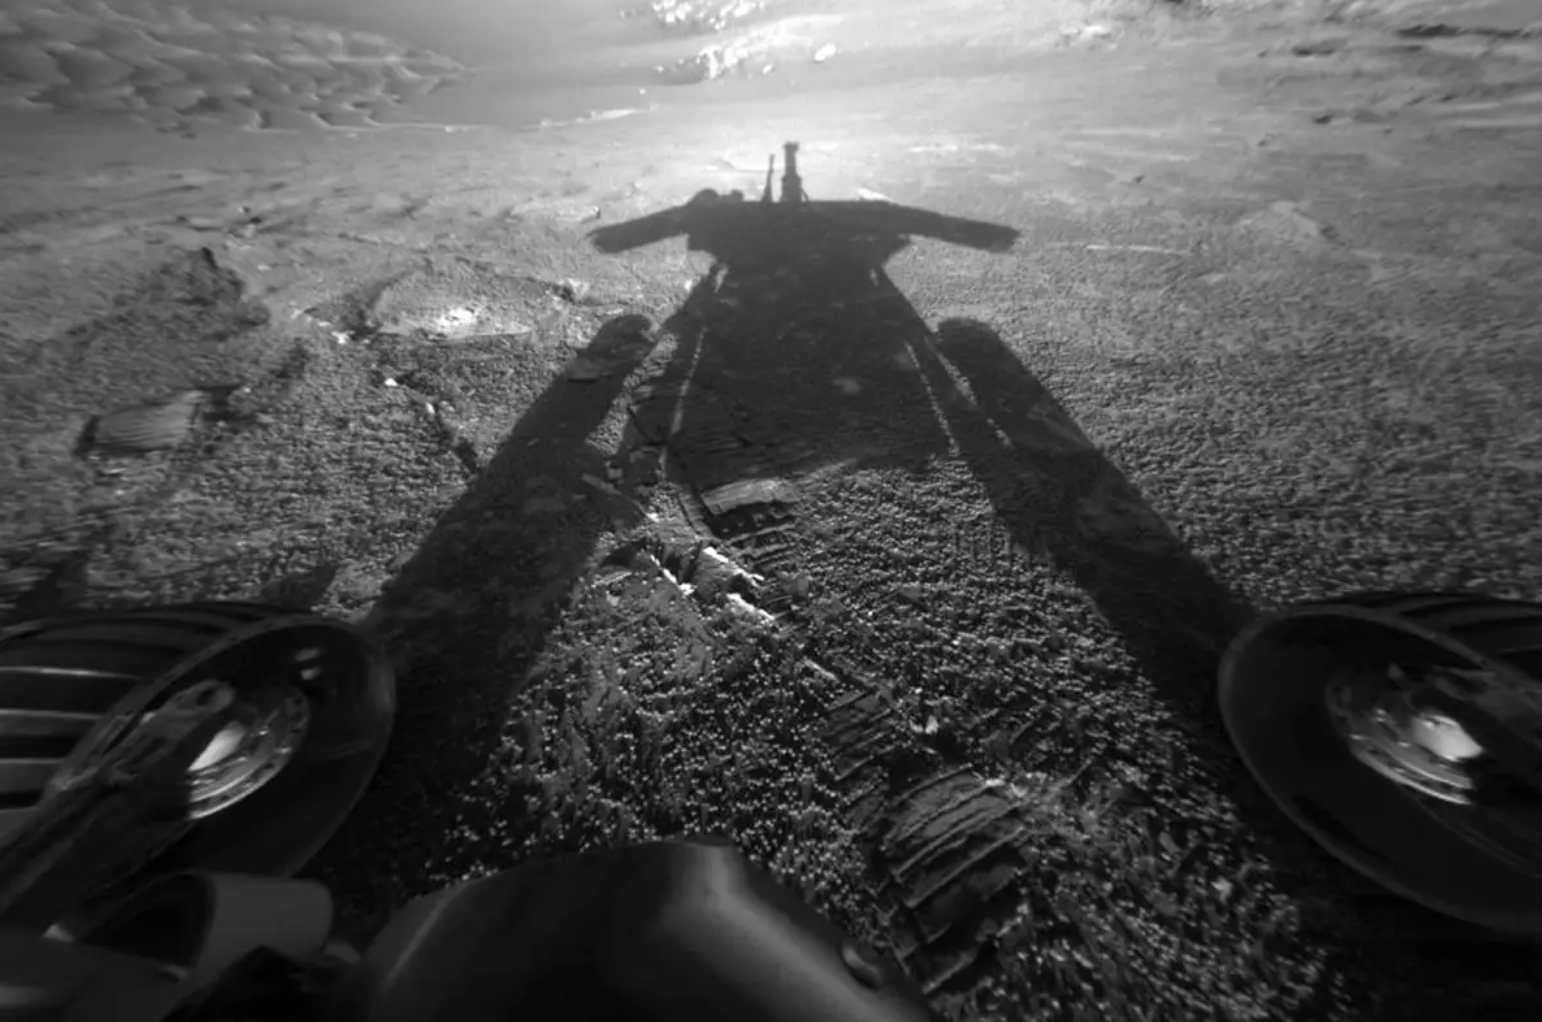 El rover Opportunity dejó de funcionar luego de 15 años de actividad en el planeta rojo